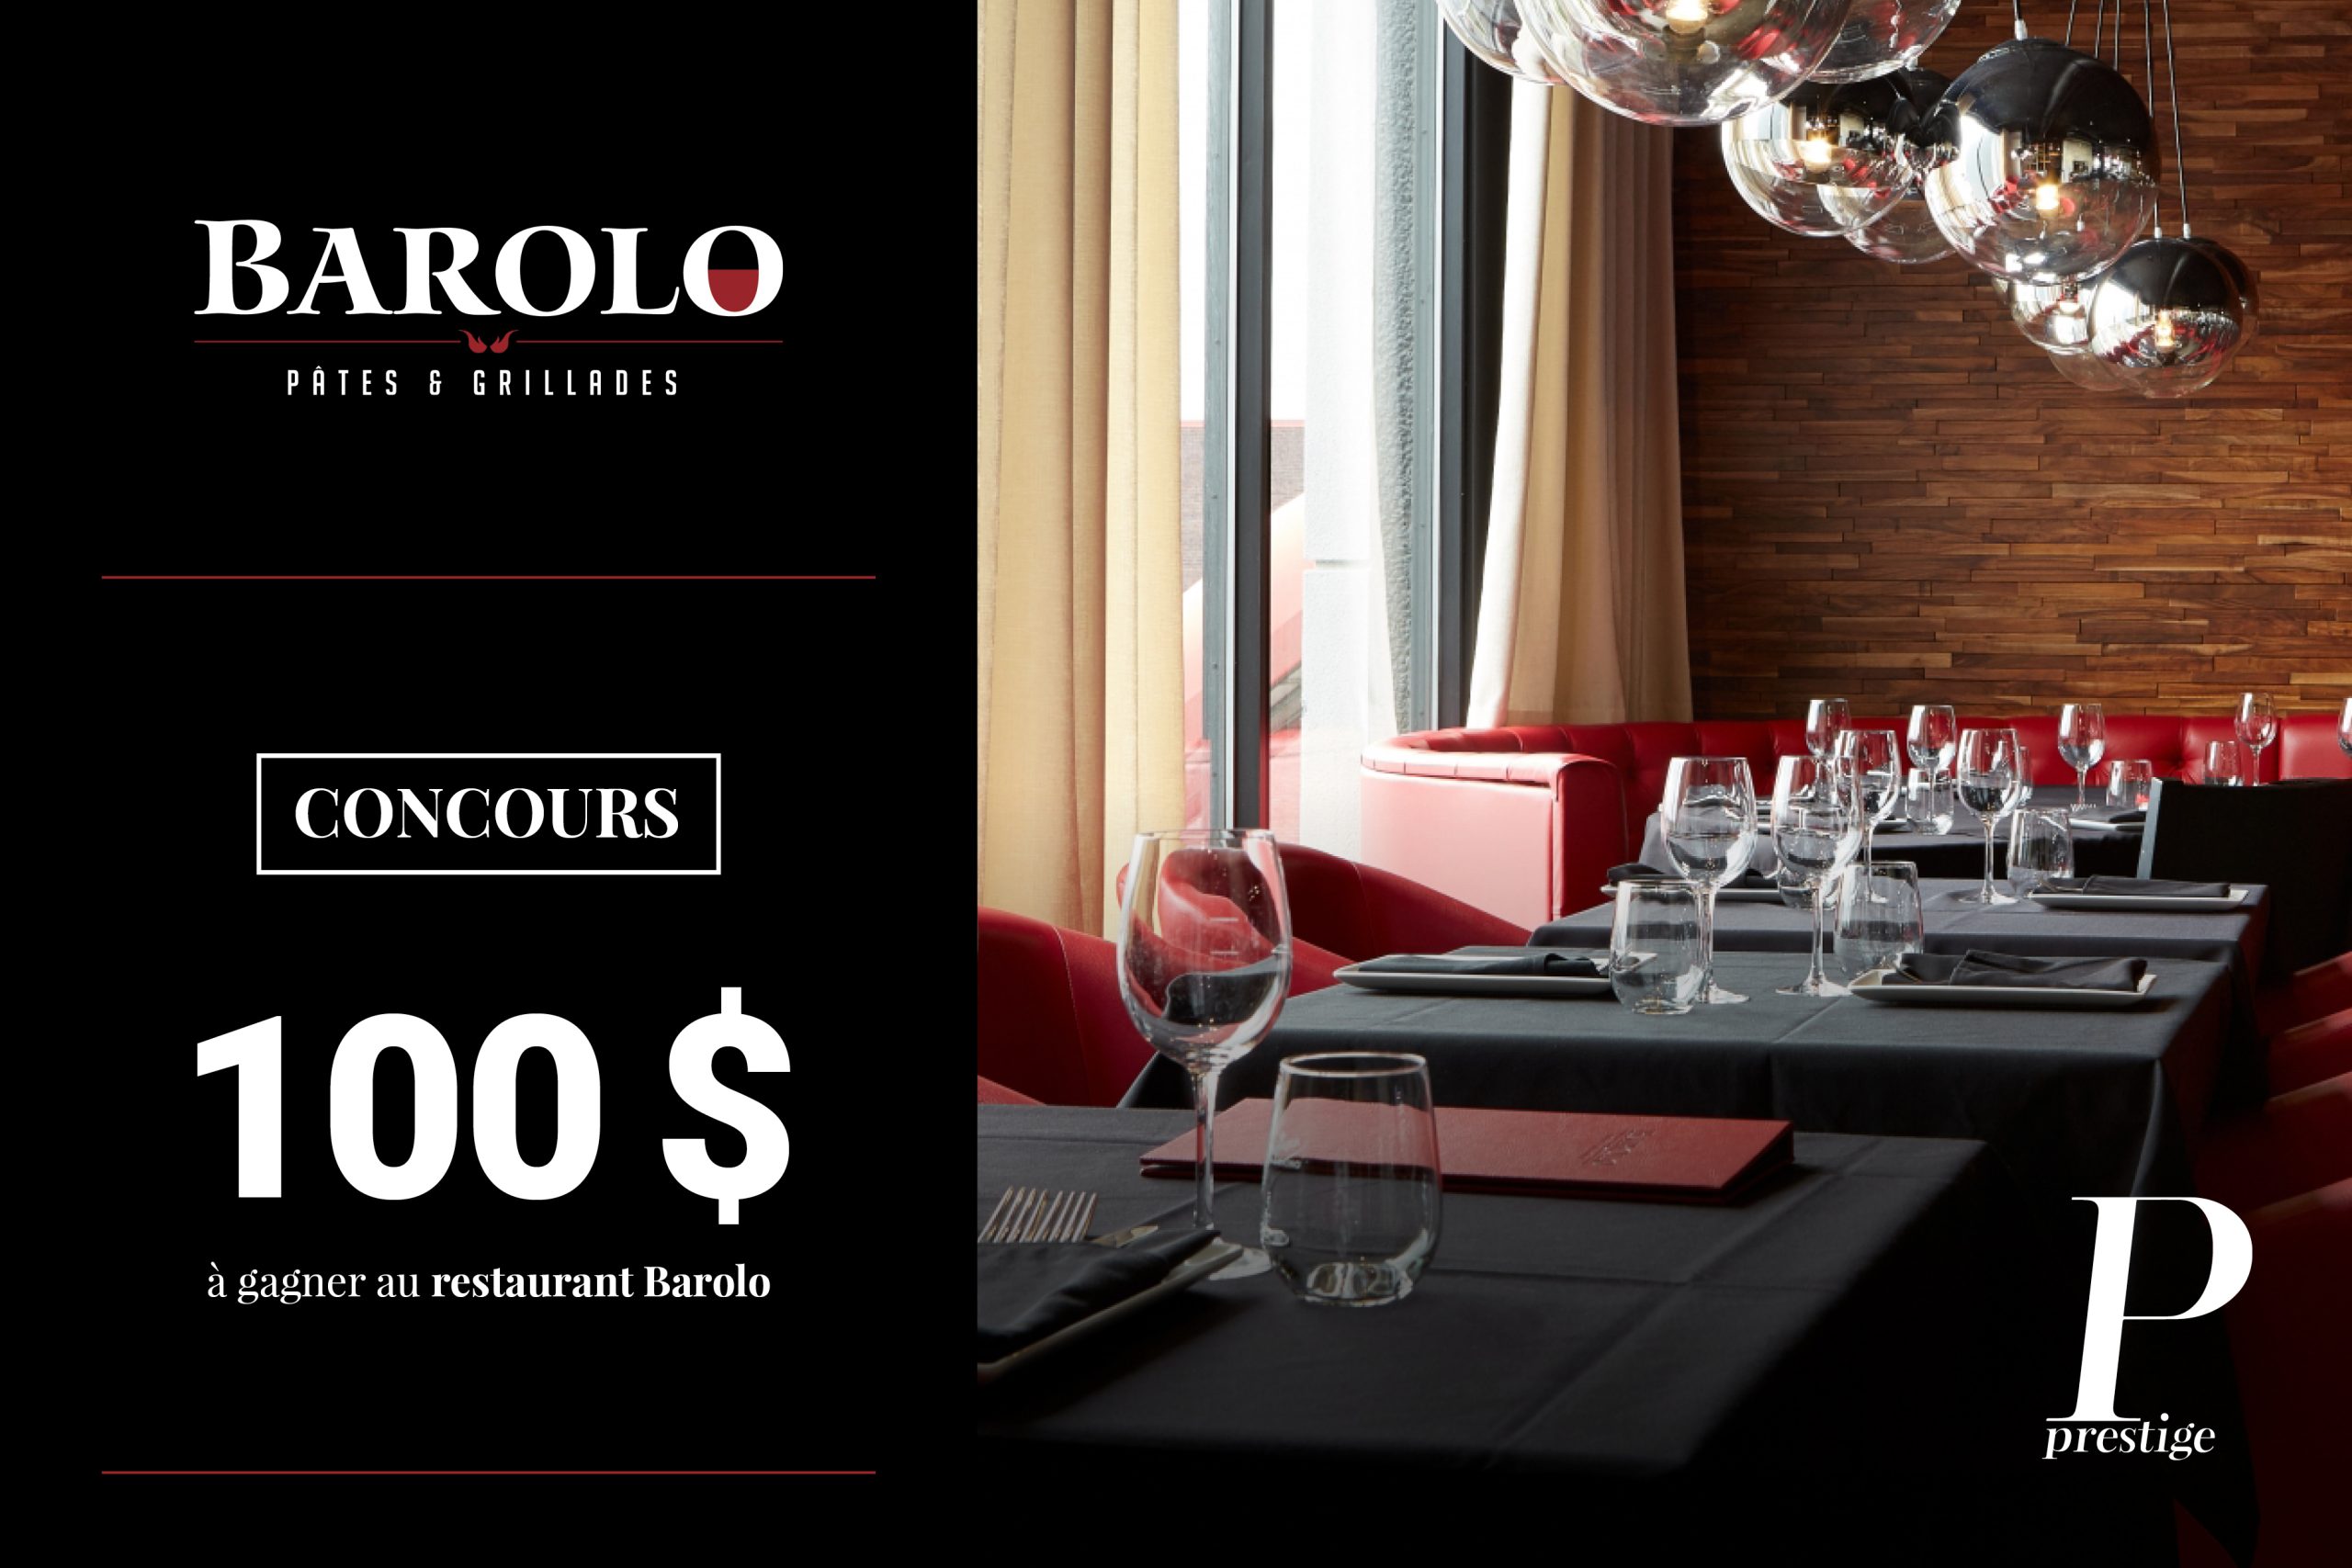 CONCOURS : Courez la chance de gagner 100 $ au restaurant Barolo Pâtes & Grillades !